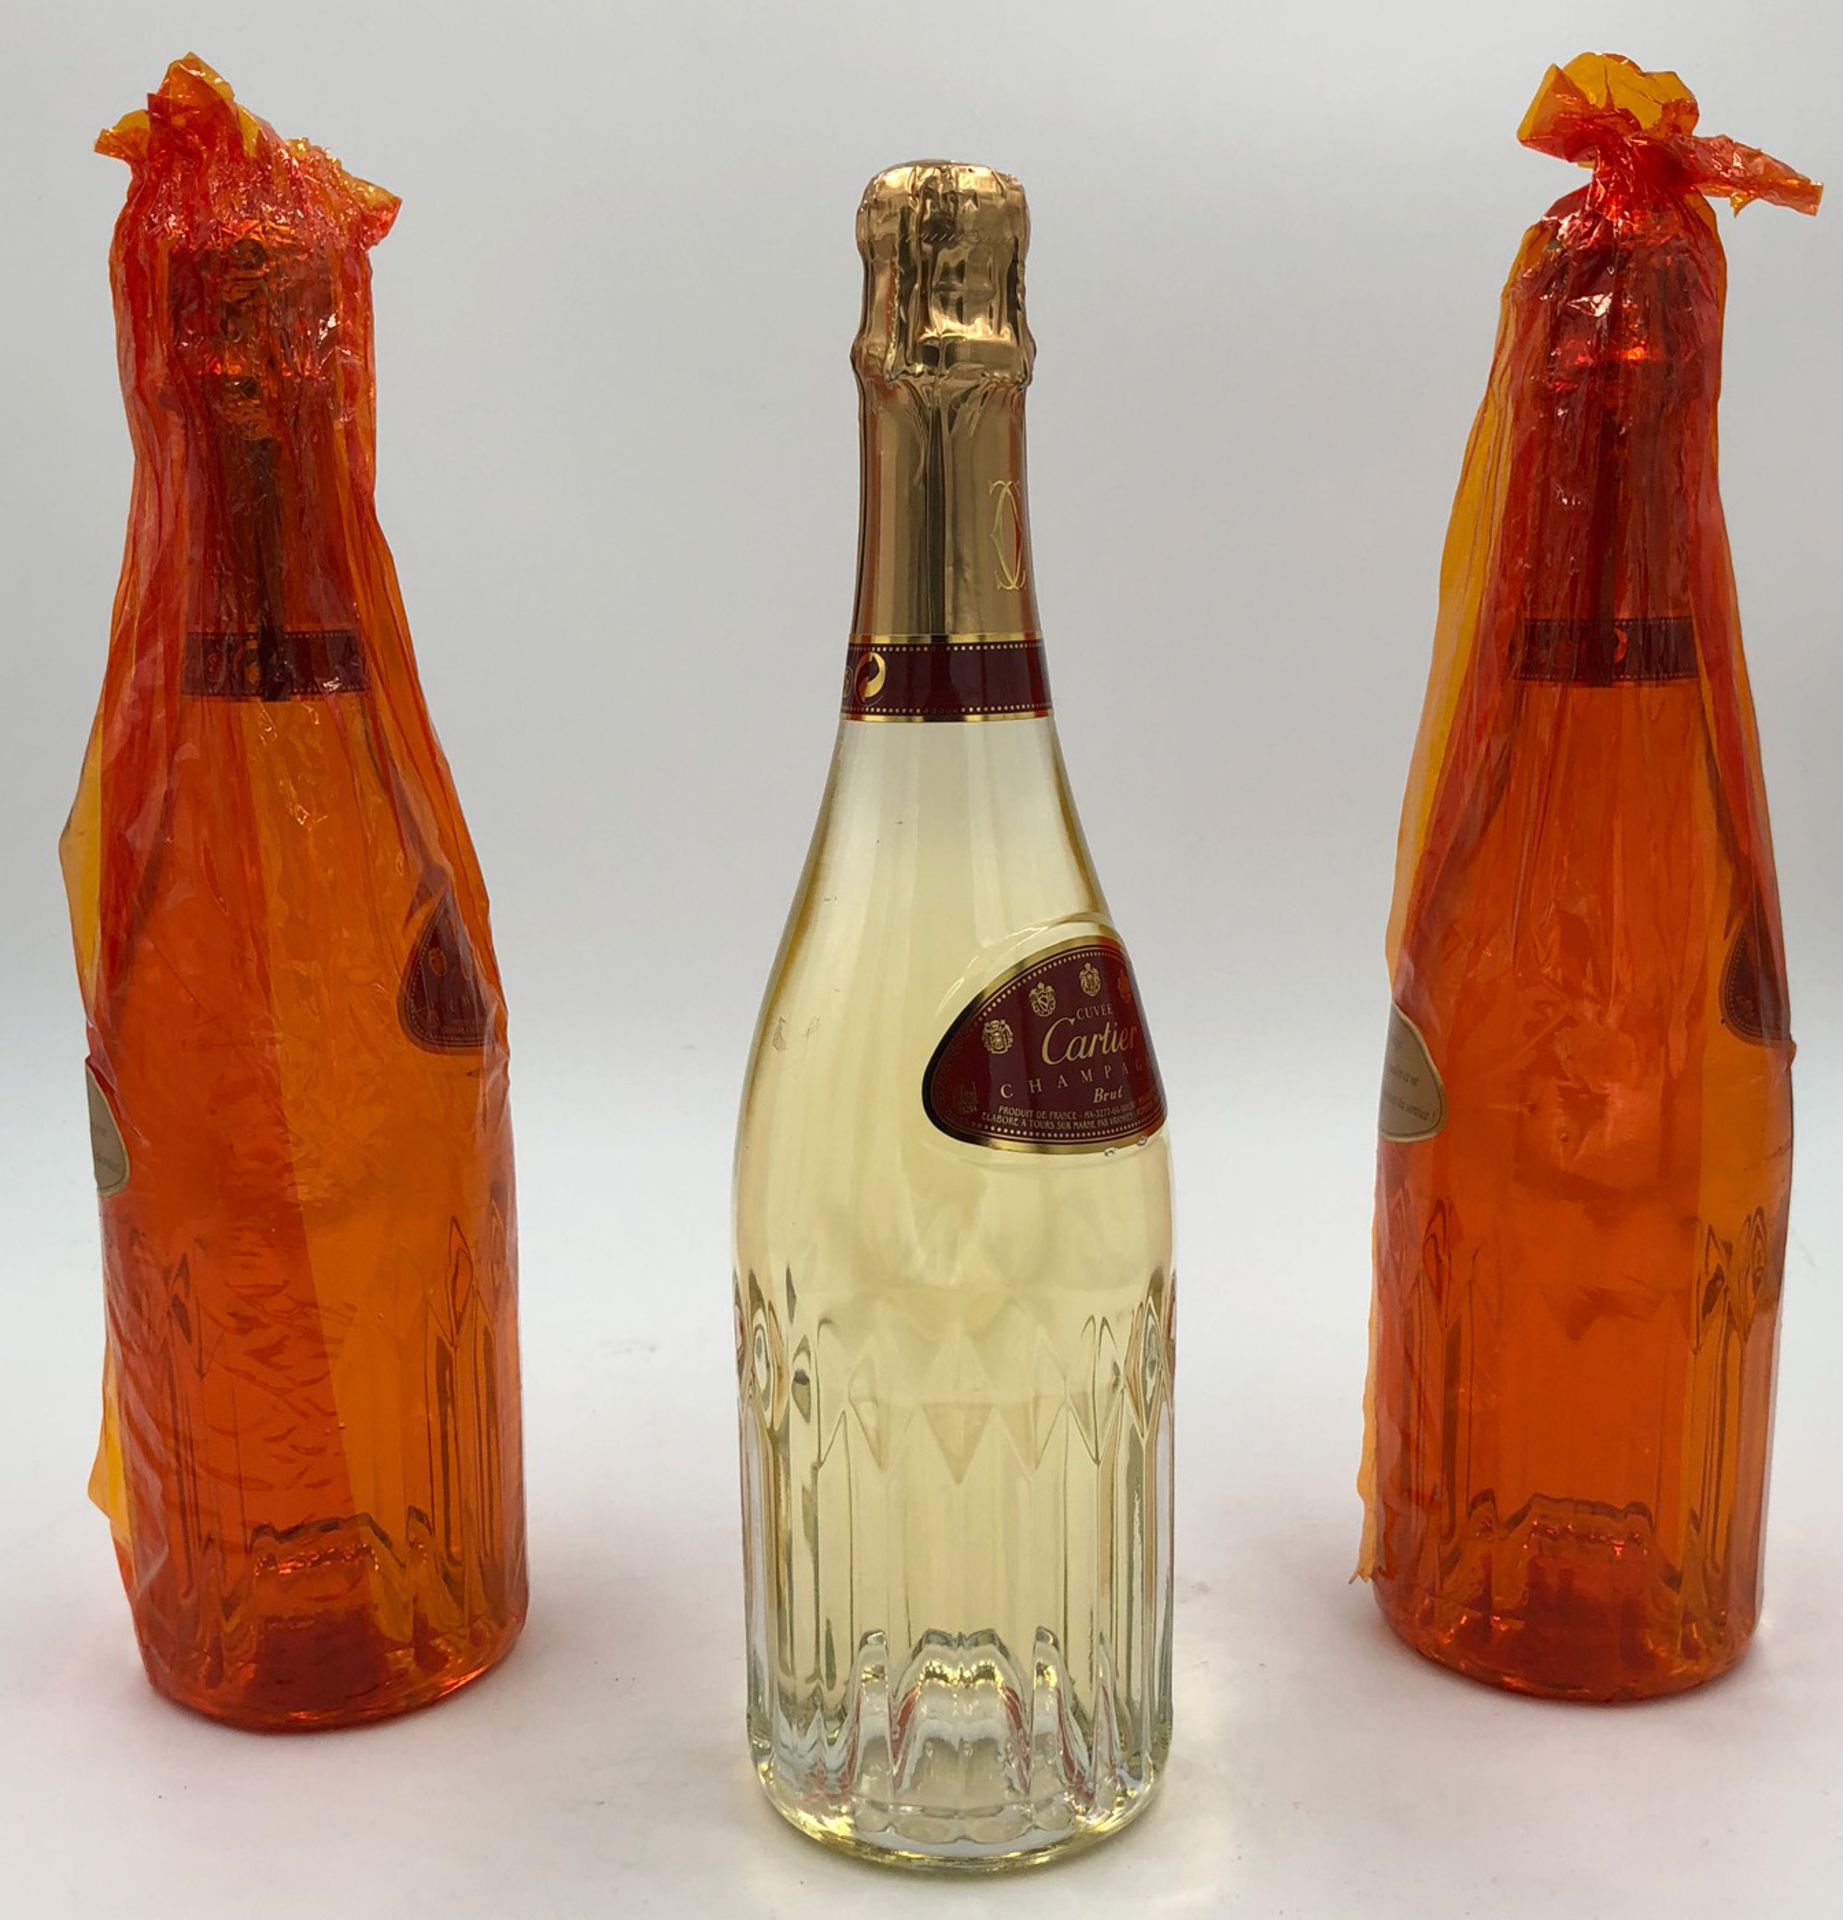 Cuveé CARTIER Champagner Brut. 3 whole bottles.750 ml, 12.5% vol. Produit de France. MA-3277-64- - Bild 4 aus 8